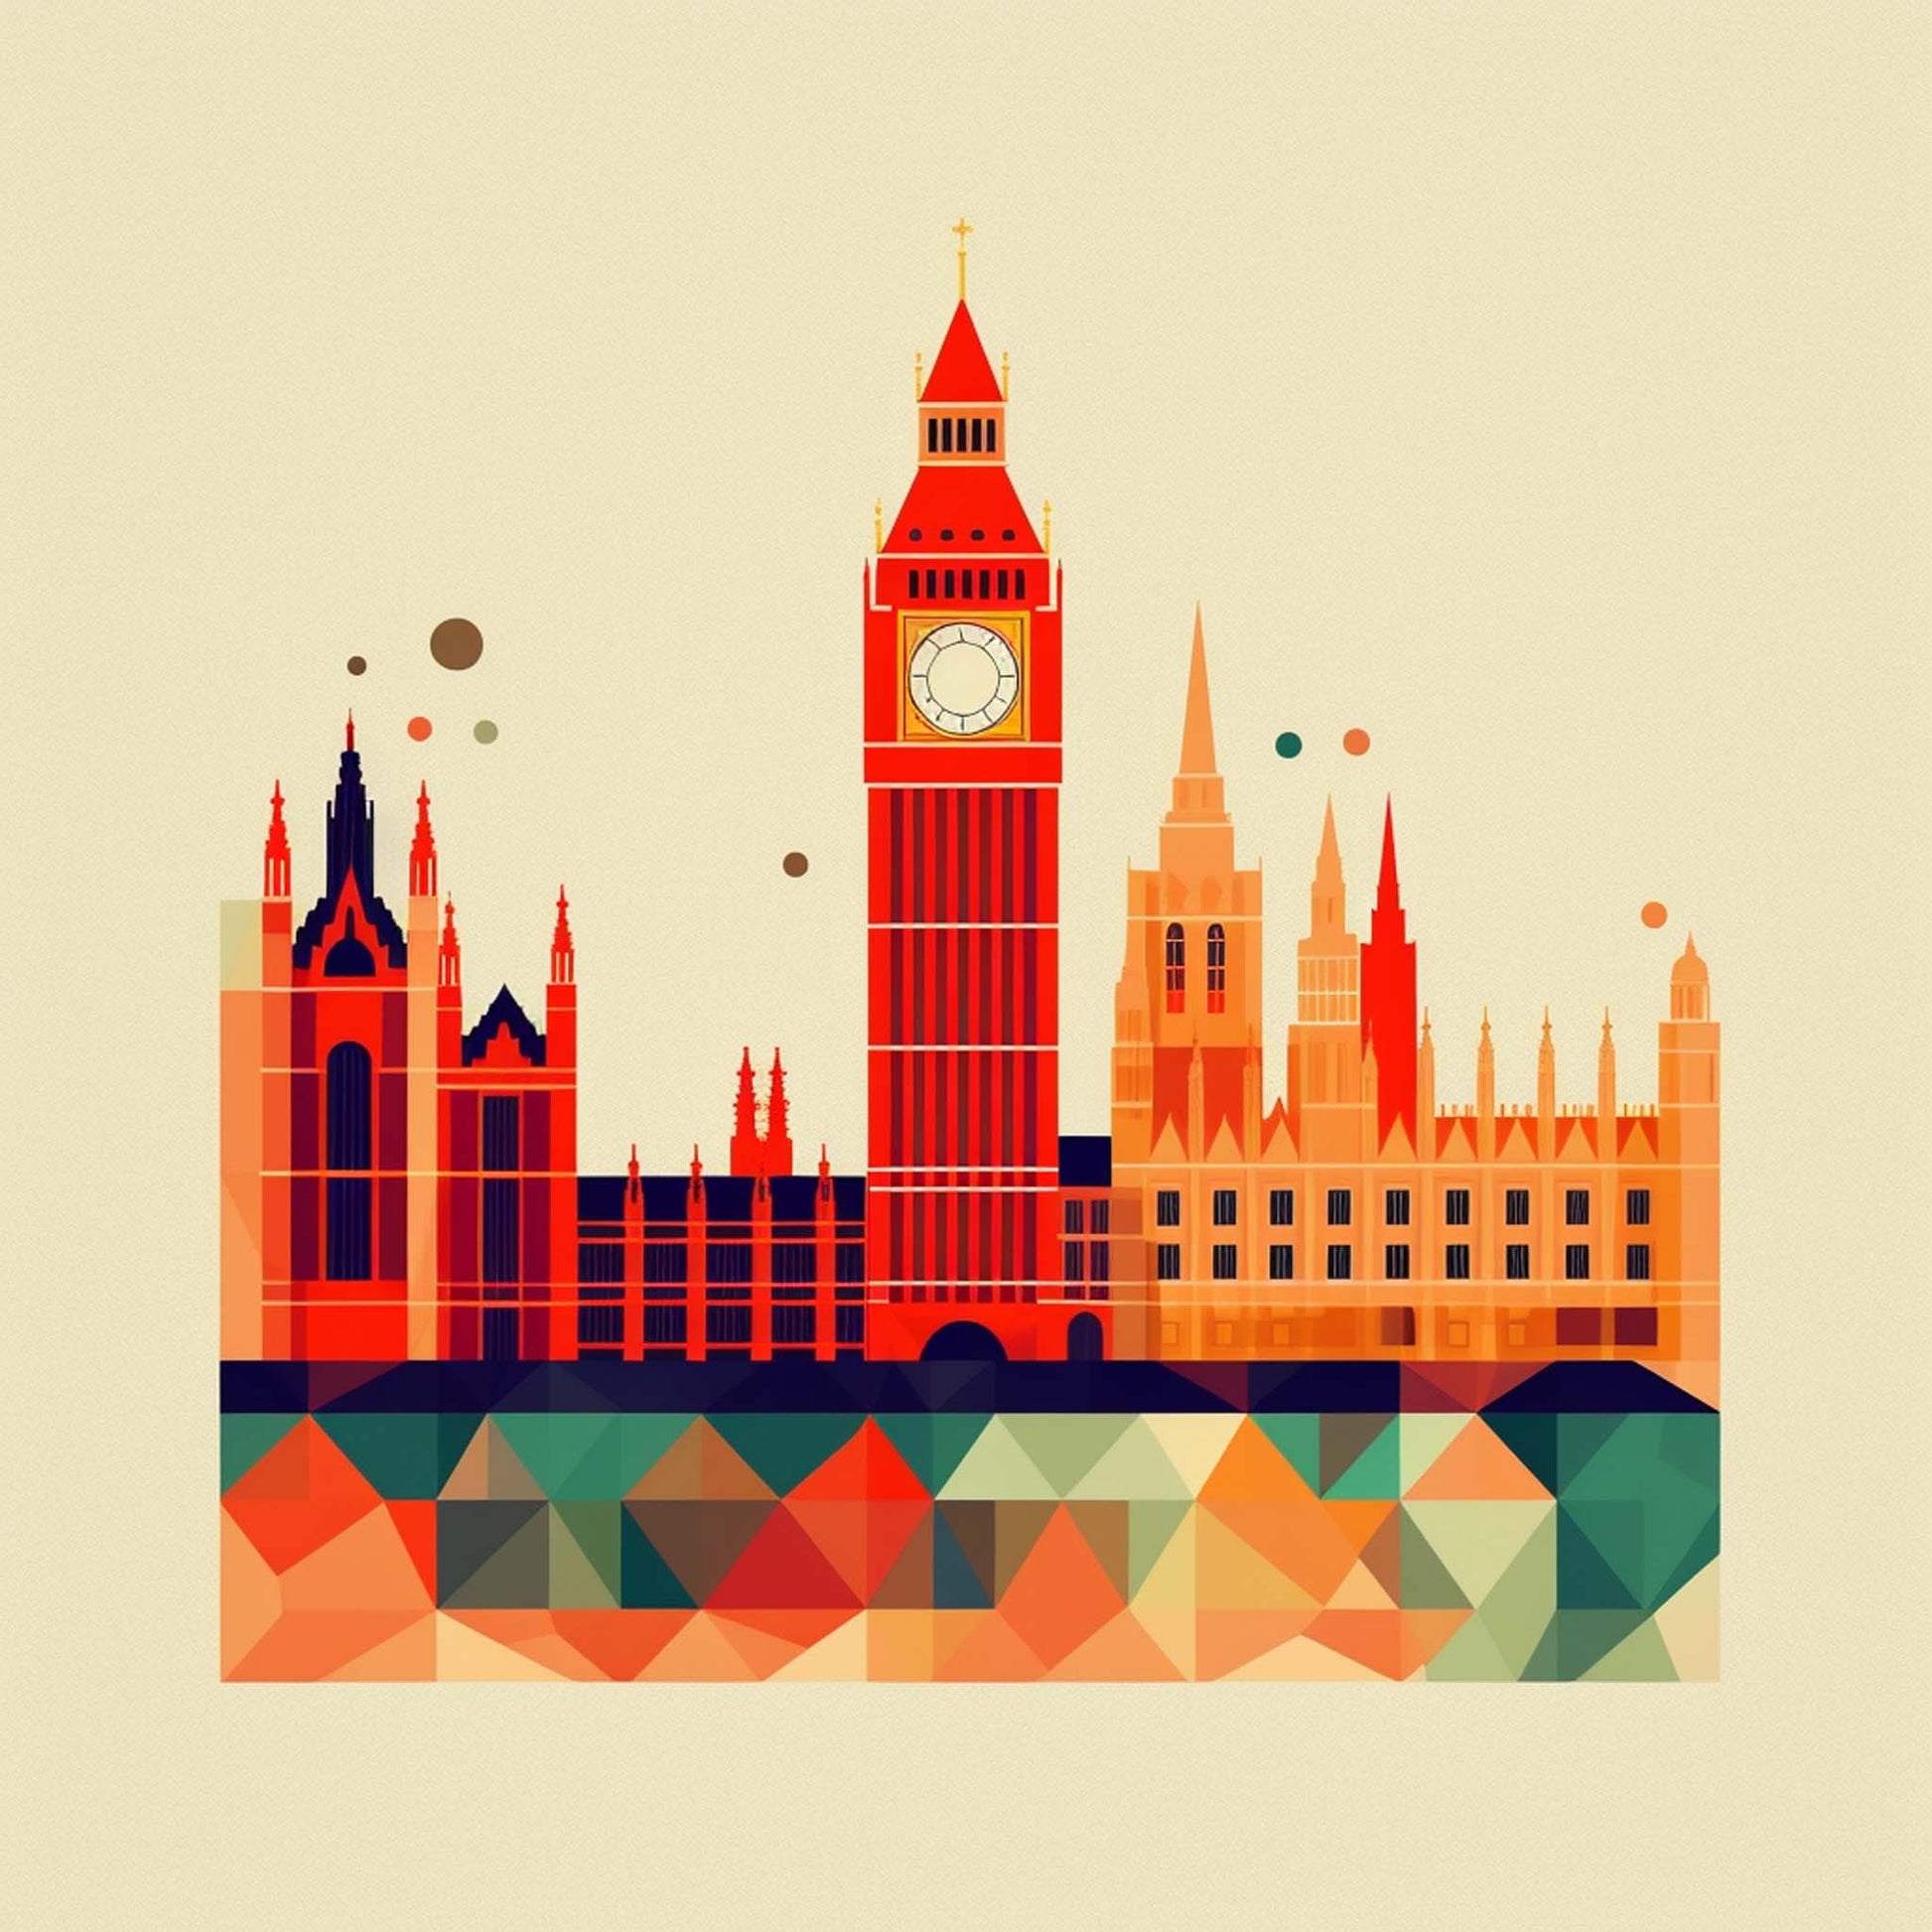 Urbanisto - London Westminster Palace - Wandbild in der Stilrichtung des Minimalismus